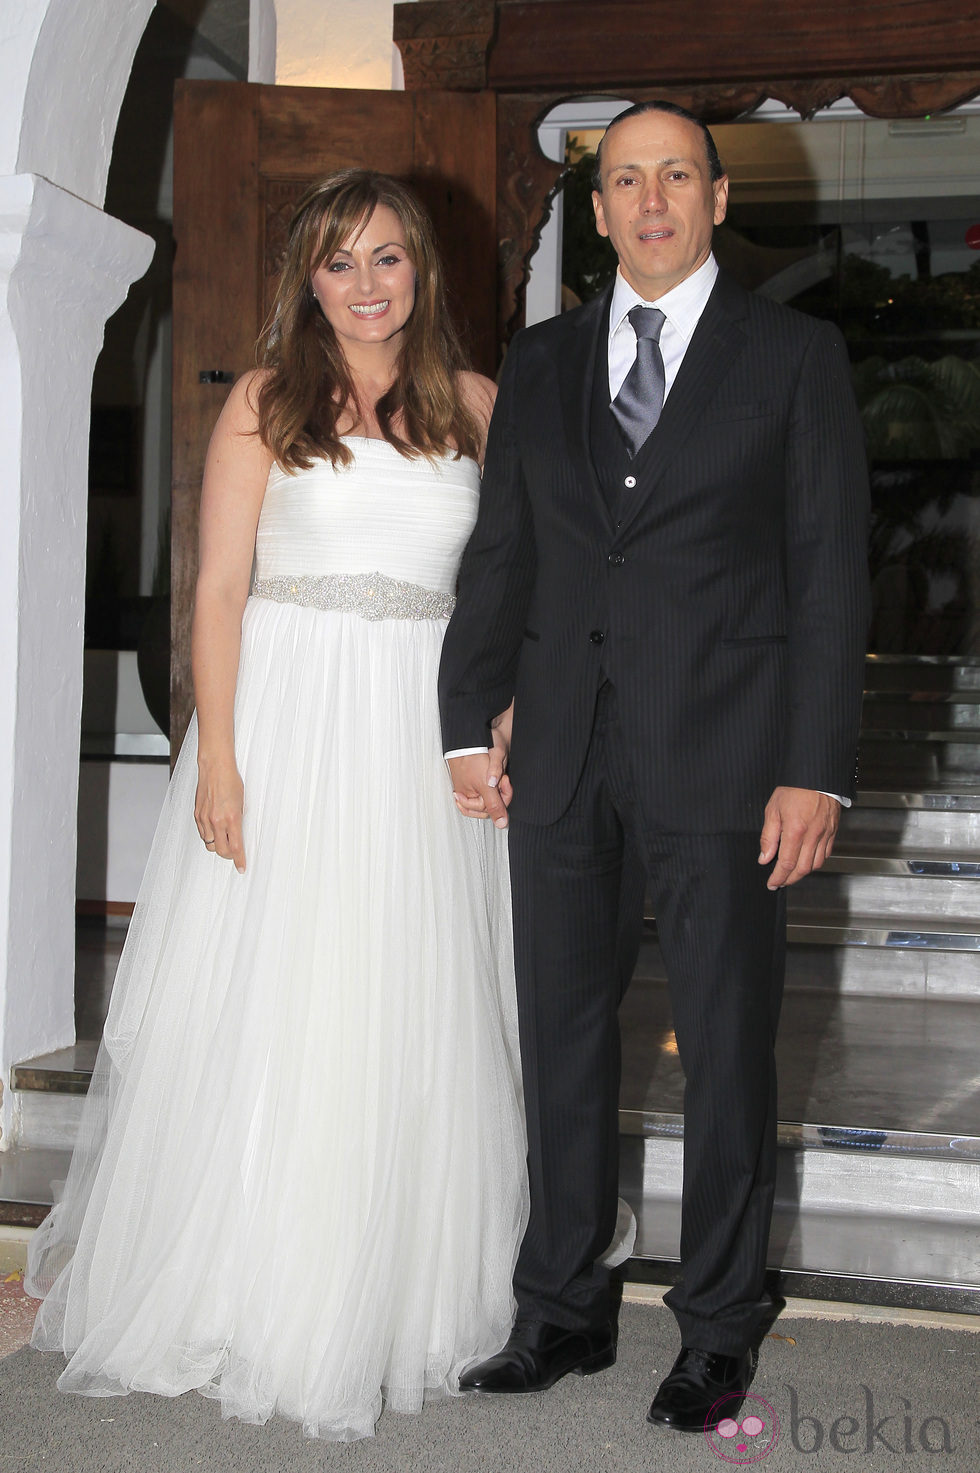 Carmen Morales y Luis Guerra el día de su boda